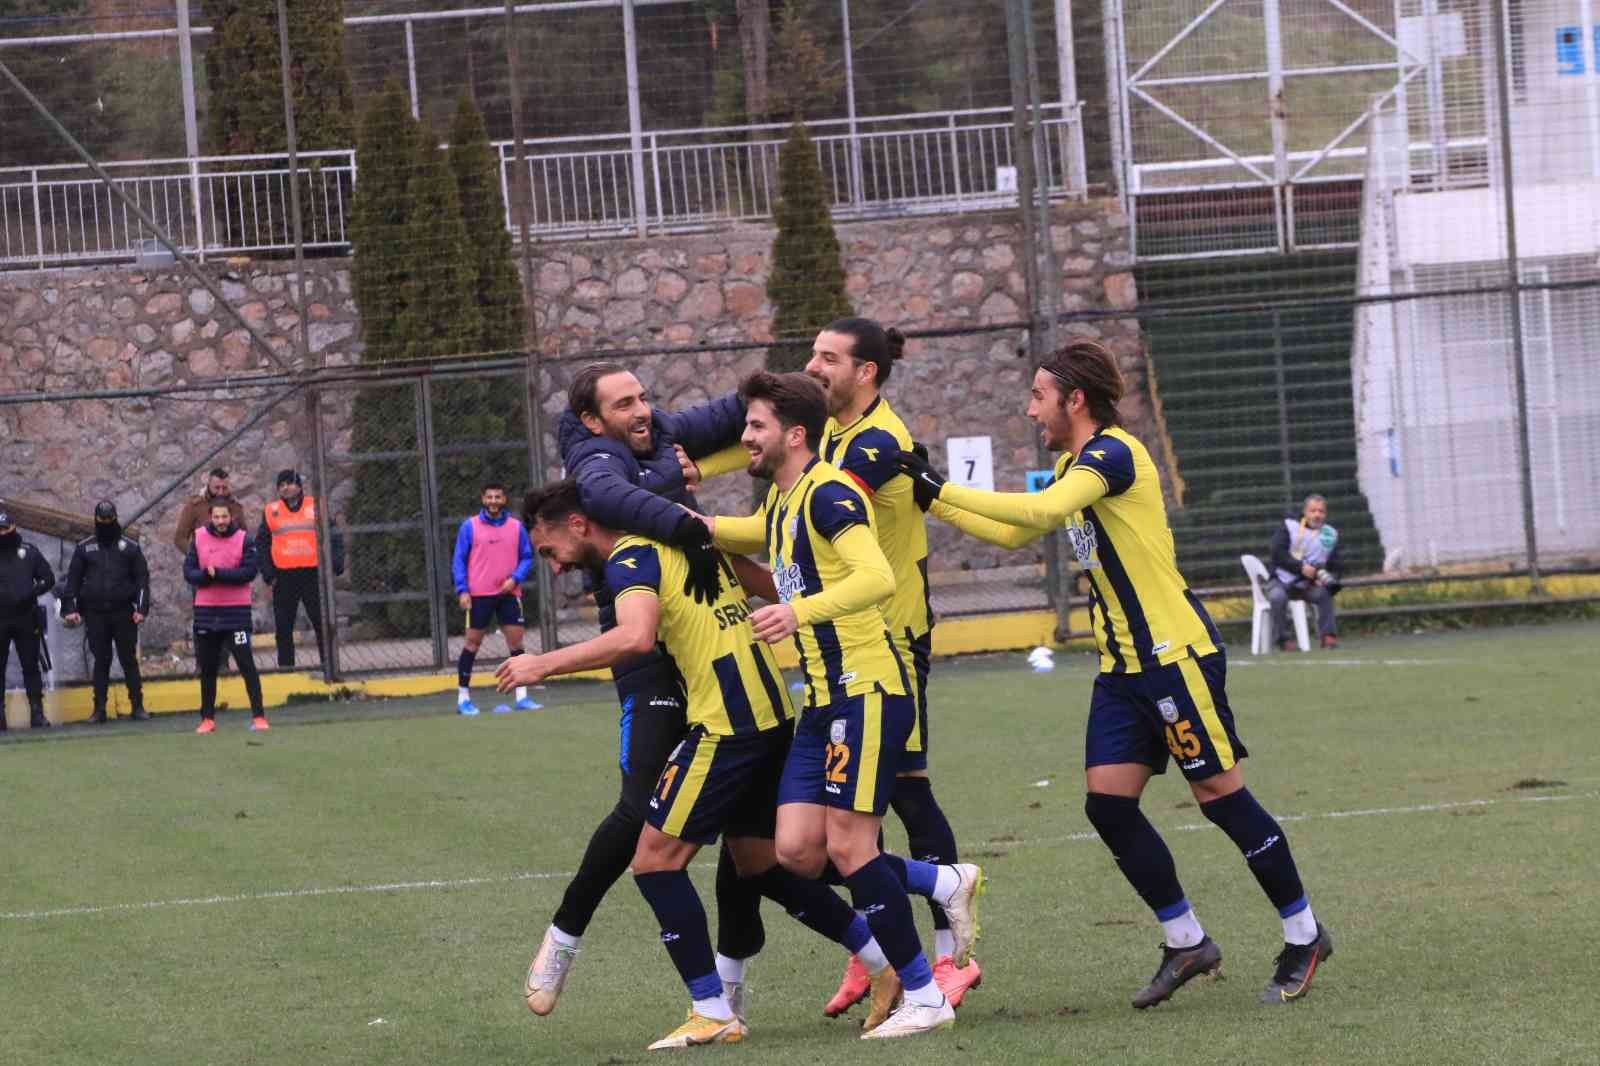 TFF 3. Lig 3. Grup’ta play-off mücadelesi veren Belediye Derincespor, 26. hafta karşılaşmasında Gümüşhane Sportif Faaliyetler’i 3-0 mağlup etti ...